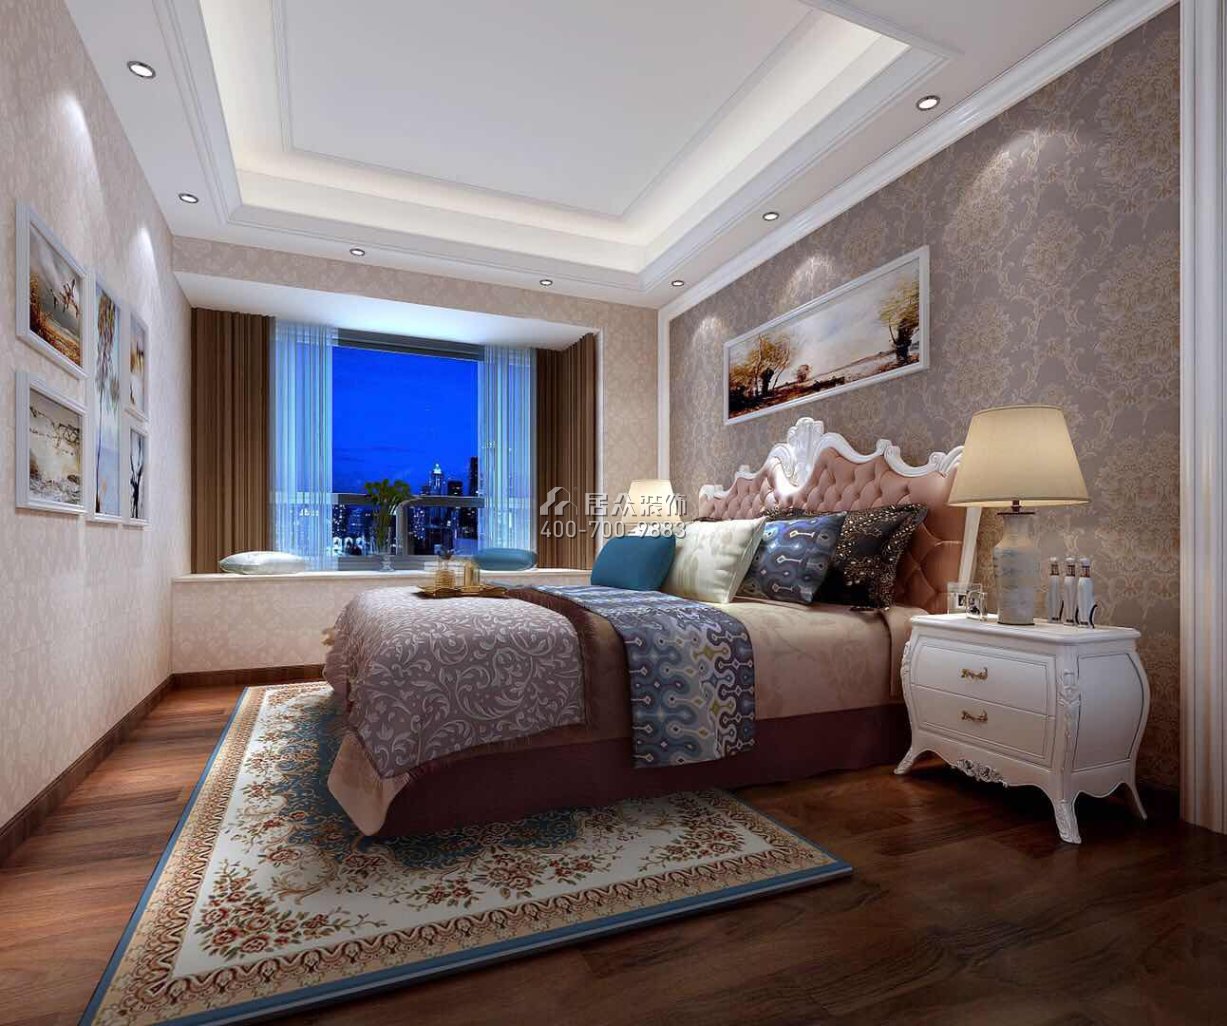 雅居乐白鹭湖挪威森林280平方米欧式风格复式户型卧室装修效果图